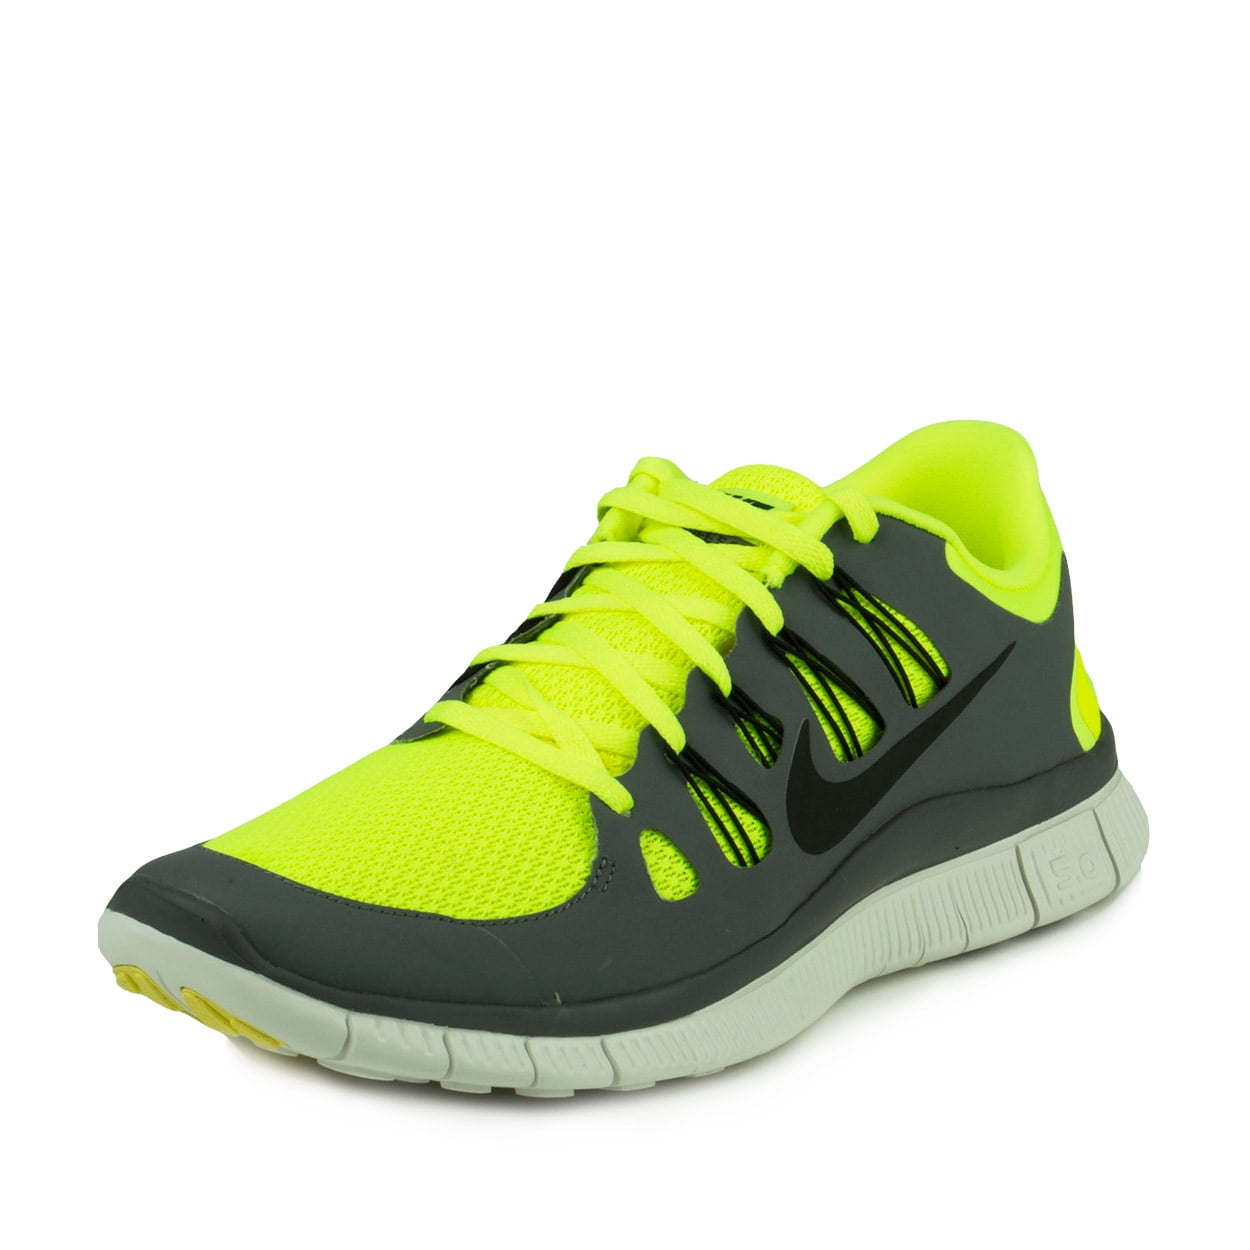 Nike Mens Free 5.0+ Shoe Volt/Black-Cool Grey 579959-700 Walmart.com